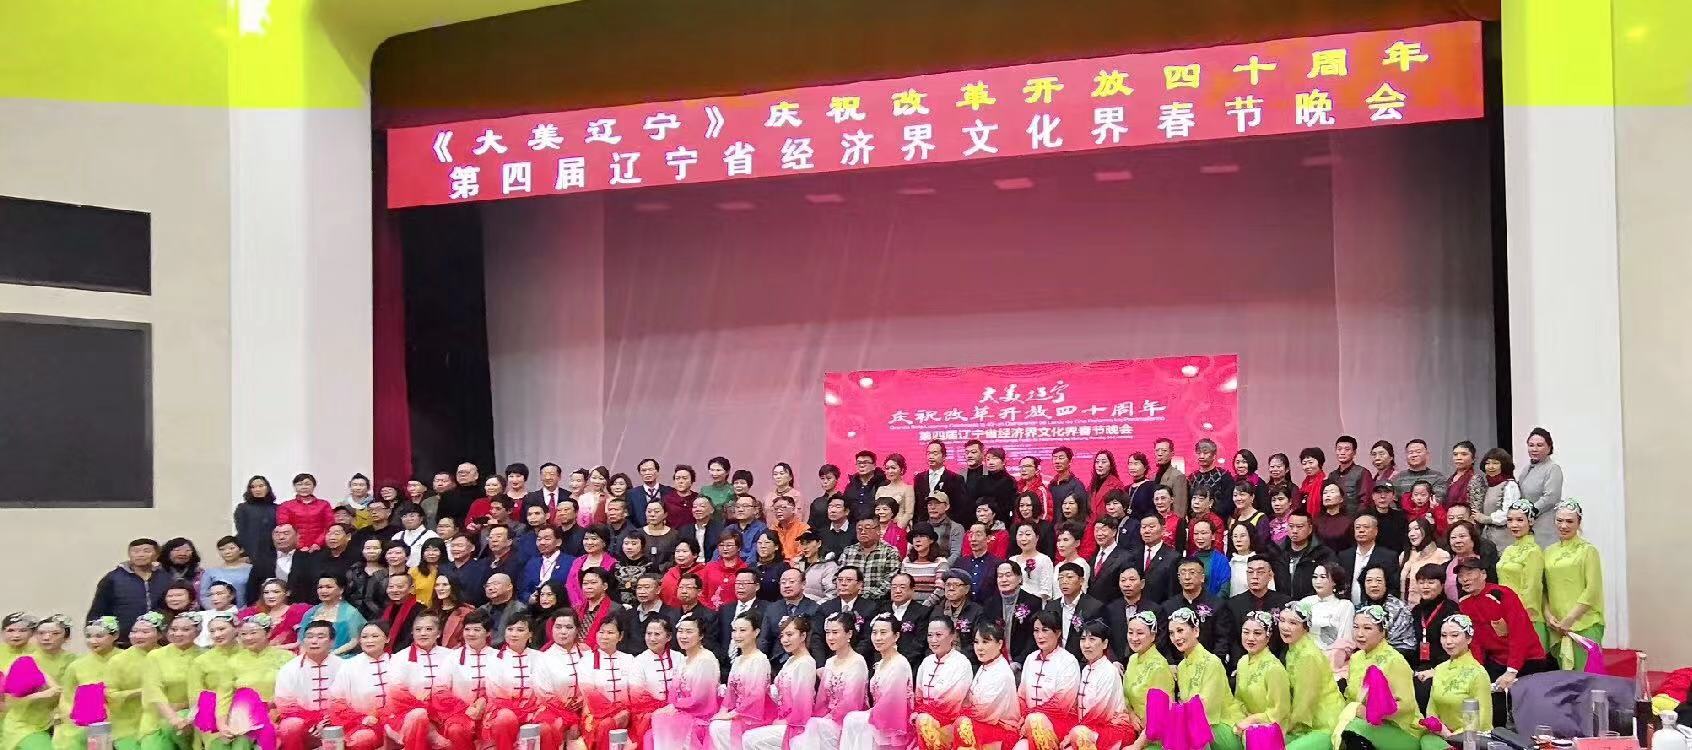 第四届辽宁省经济界文化界春节晚会举行